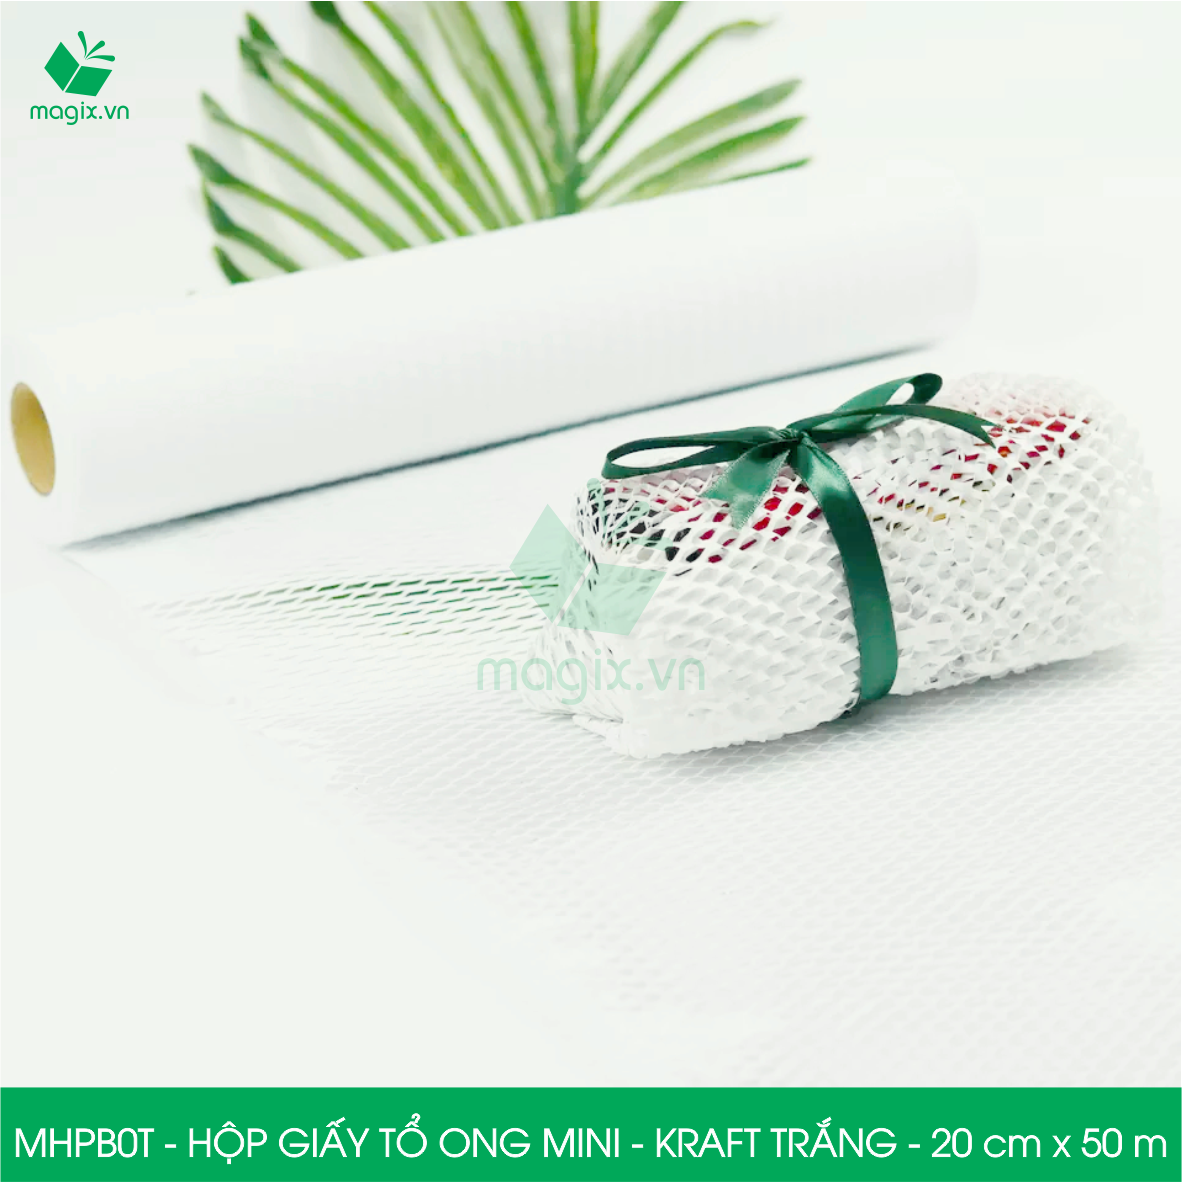 MHPB0T - 20cm x 50m - Hộp giấy Kraft tổ ong chống sốc thay thế bóng khí xốp hơi đóng hàng